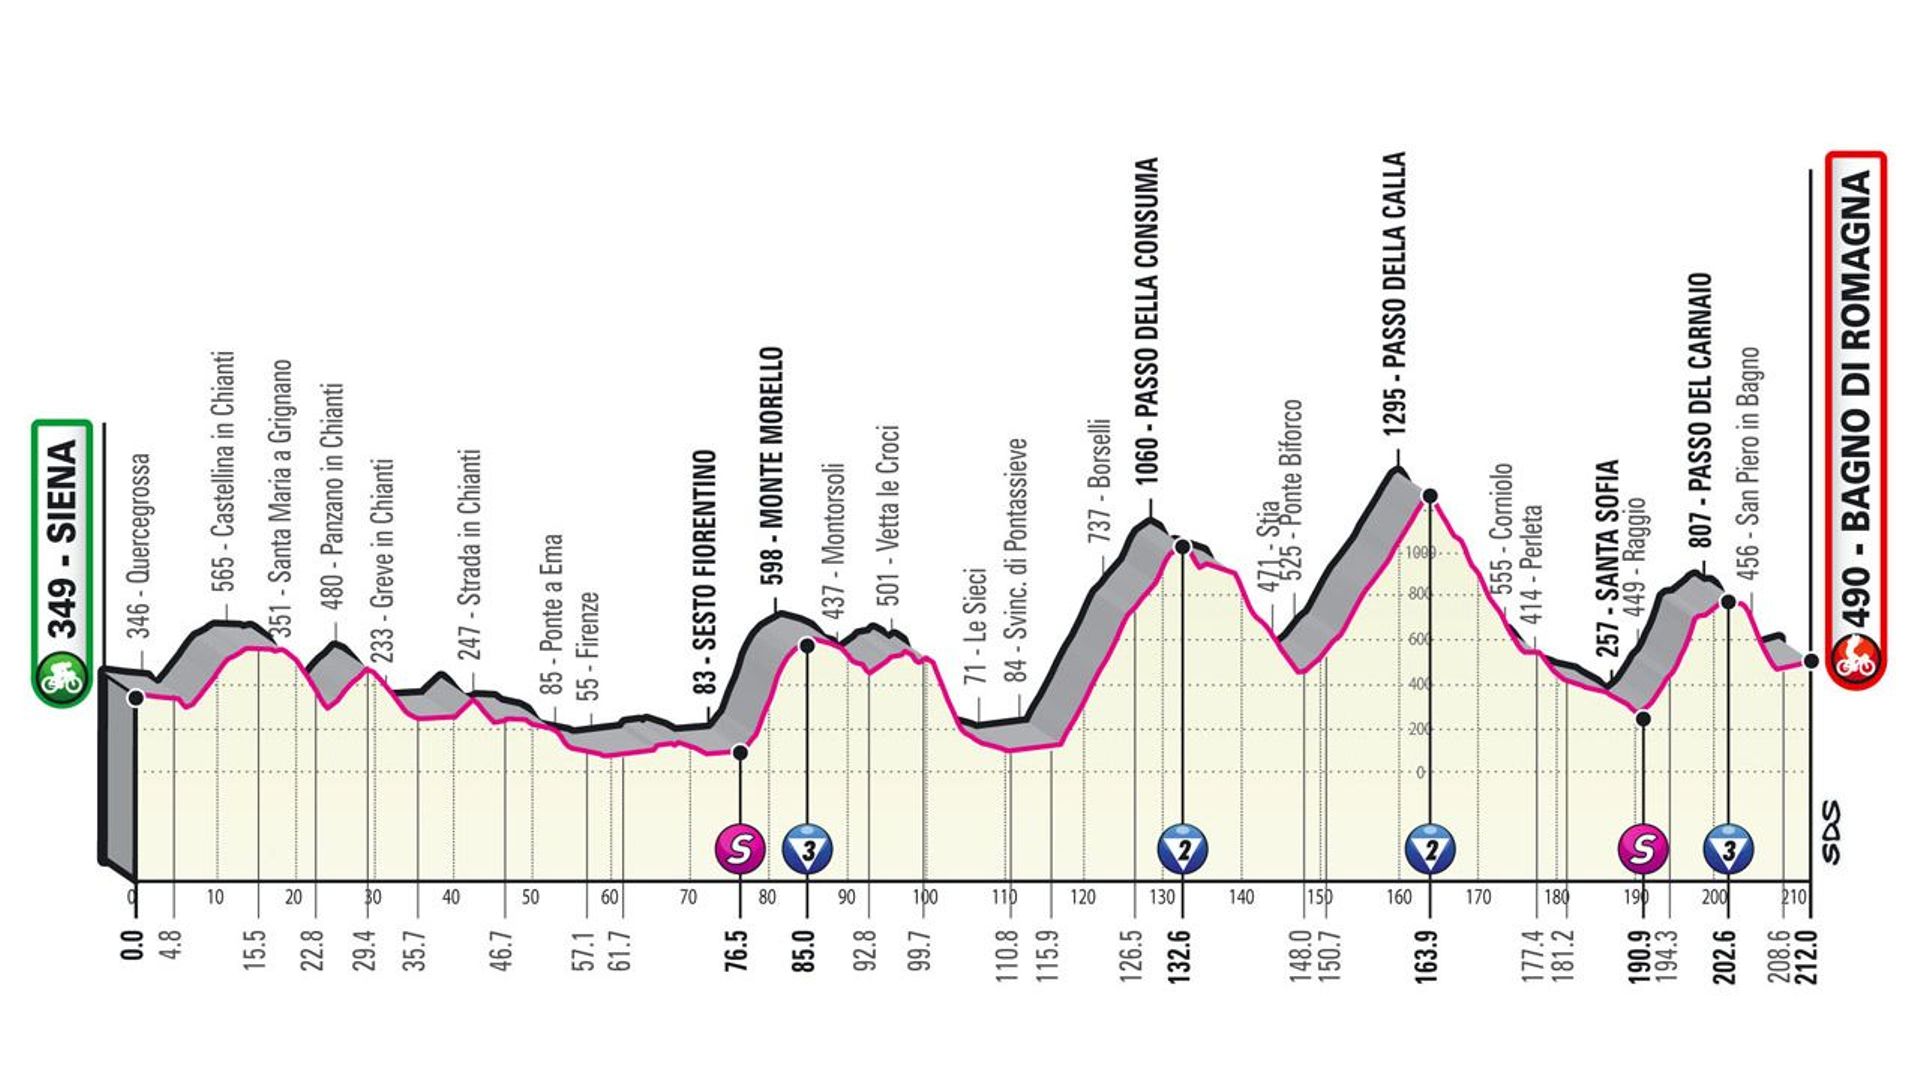 Le parcours de la 12ème étape du Giro 2021.
